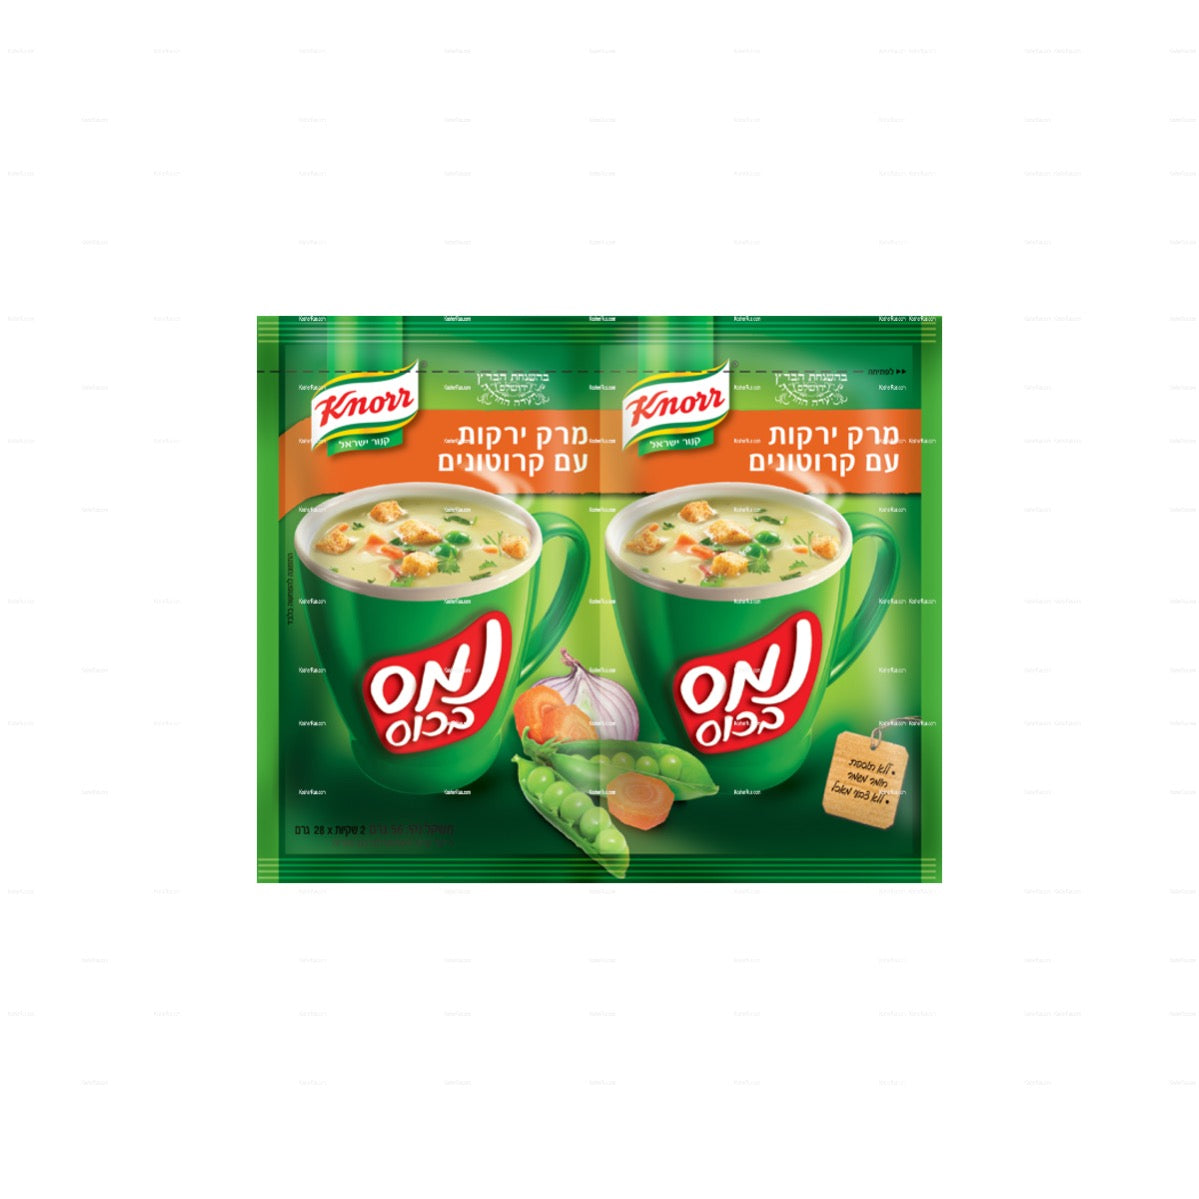 Knorr Vegetables & Crouton Instant Soup 2x1oz